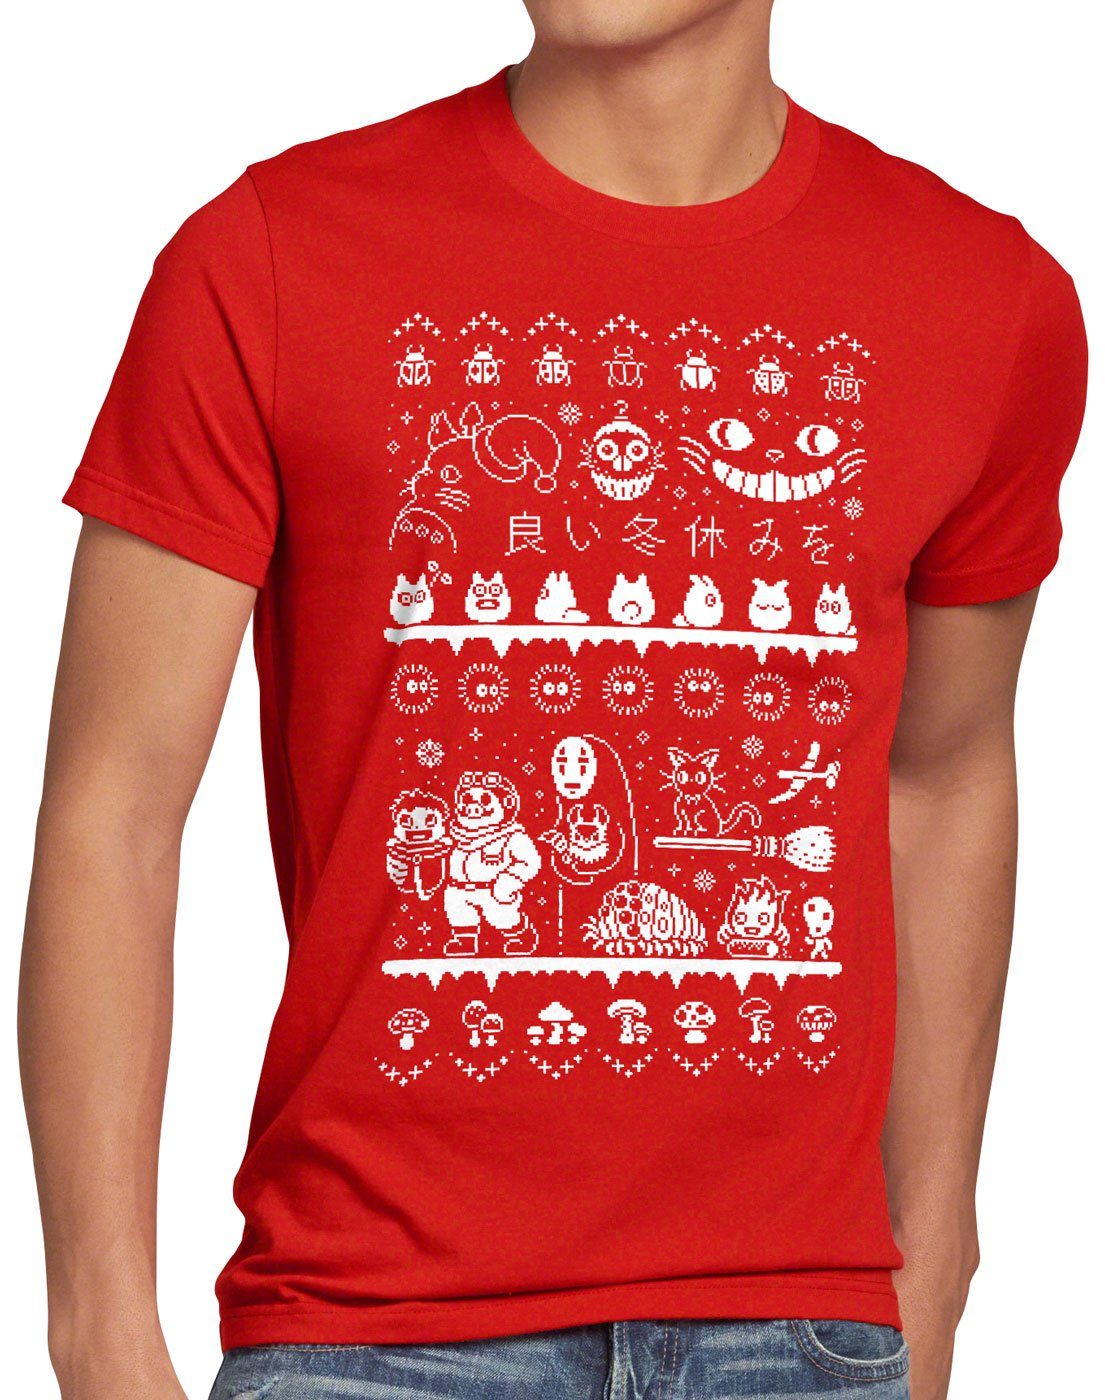 Ghibli film t chihiro schloss Print-Shirt Sweater Anime Herren style3 T-Shirt Christmas rot mononoke totoro